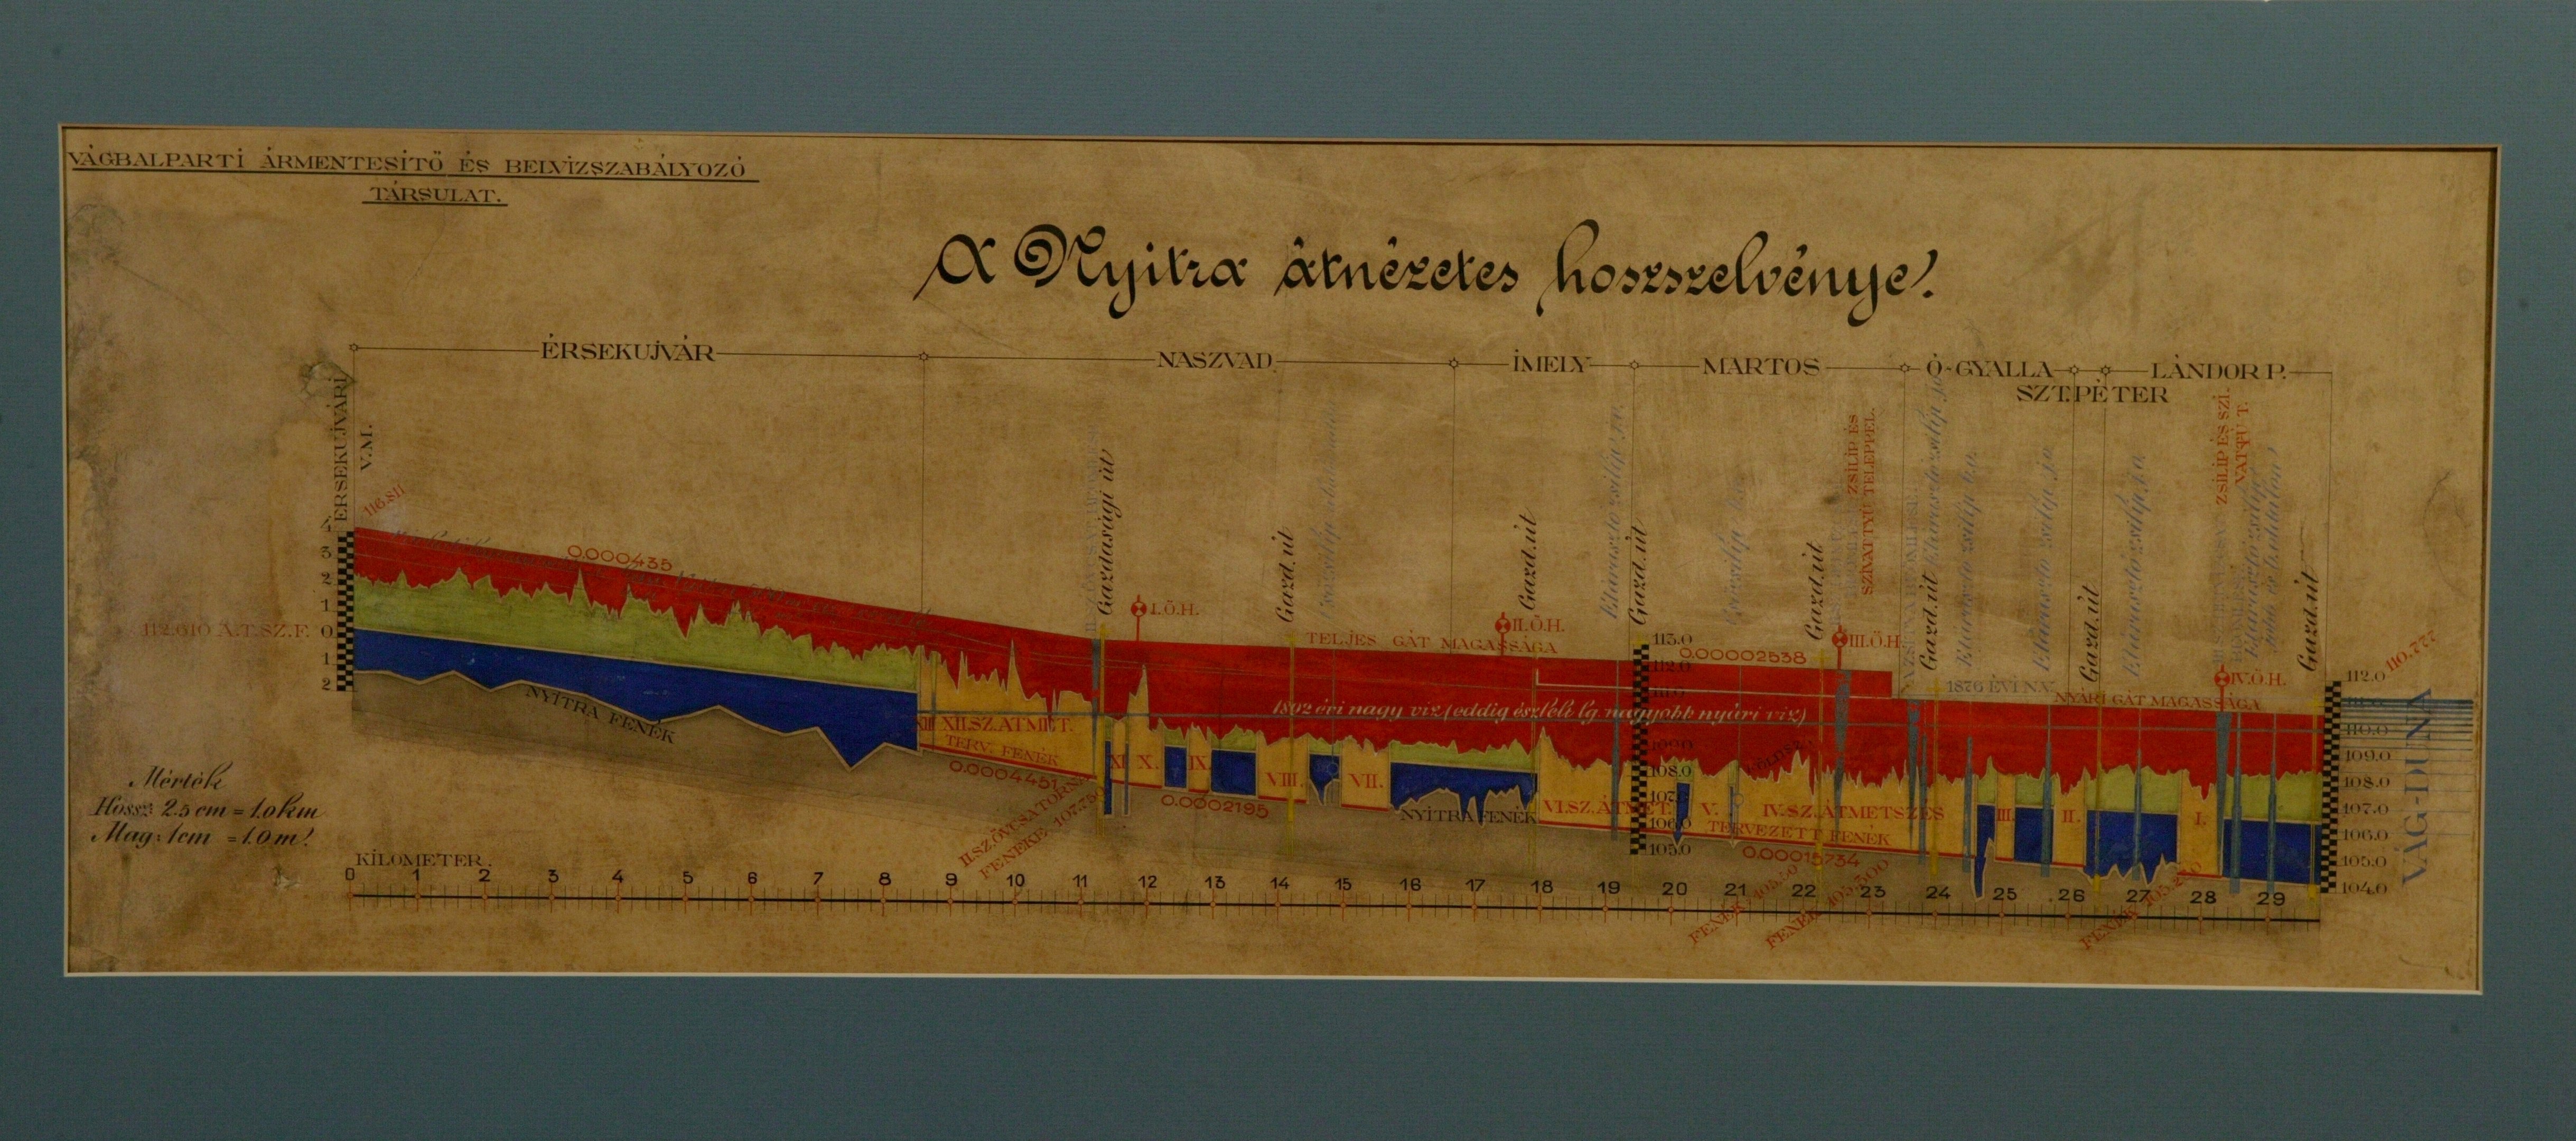 A Nyitra átnézetes hossz-szelvénye (Magyar Környezetvédelmi és Vízügyi Múzeum - Duna Múzeum CC BY-NC-SA)